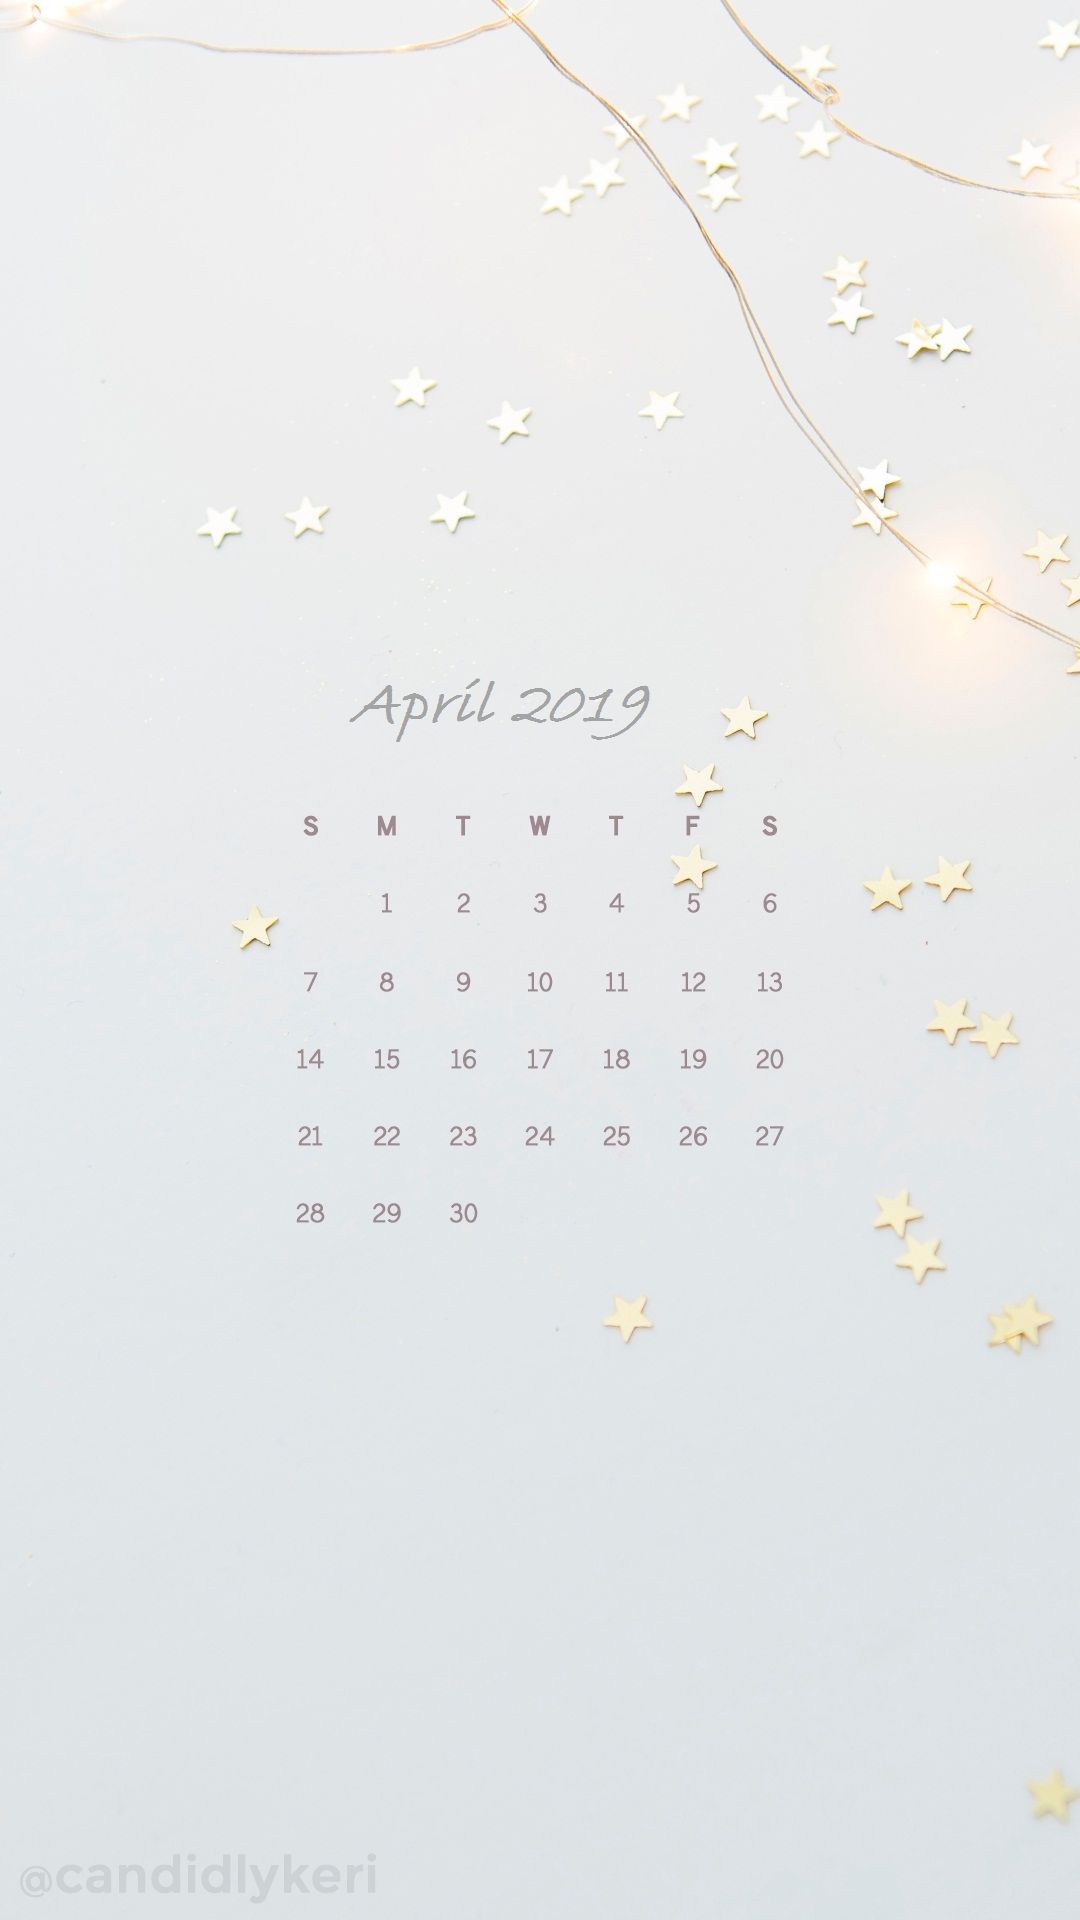 April iPhone Calendar Wallpaper 2019april